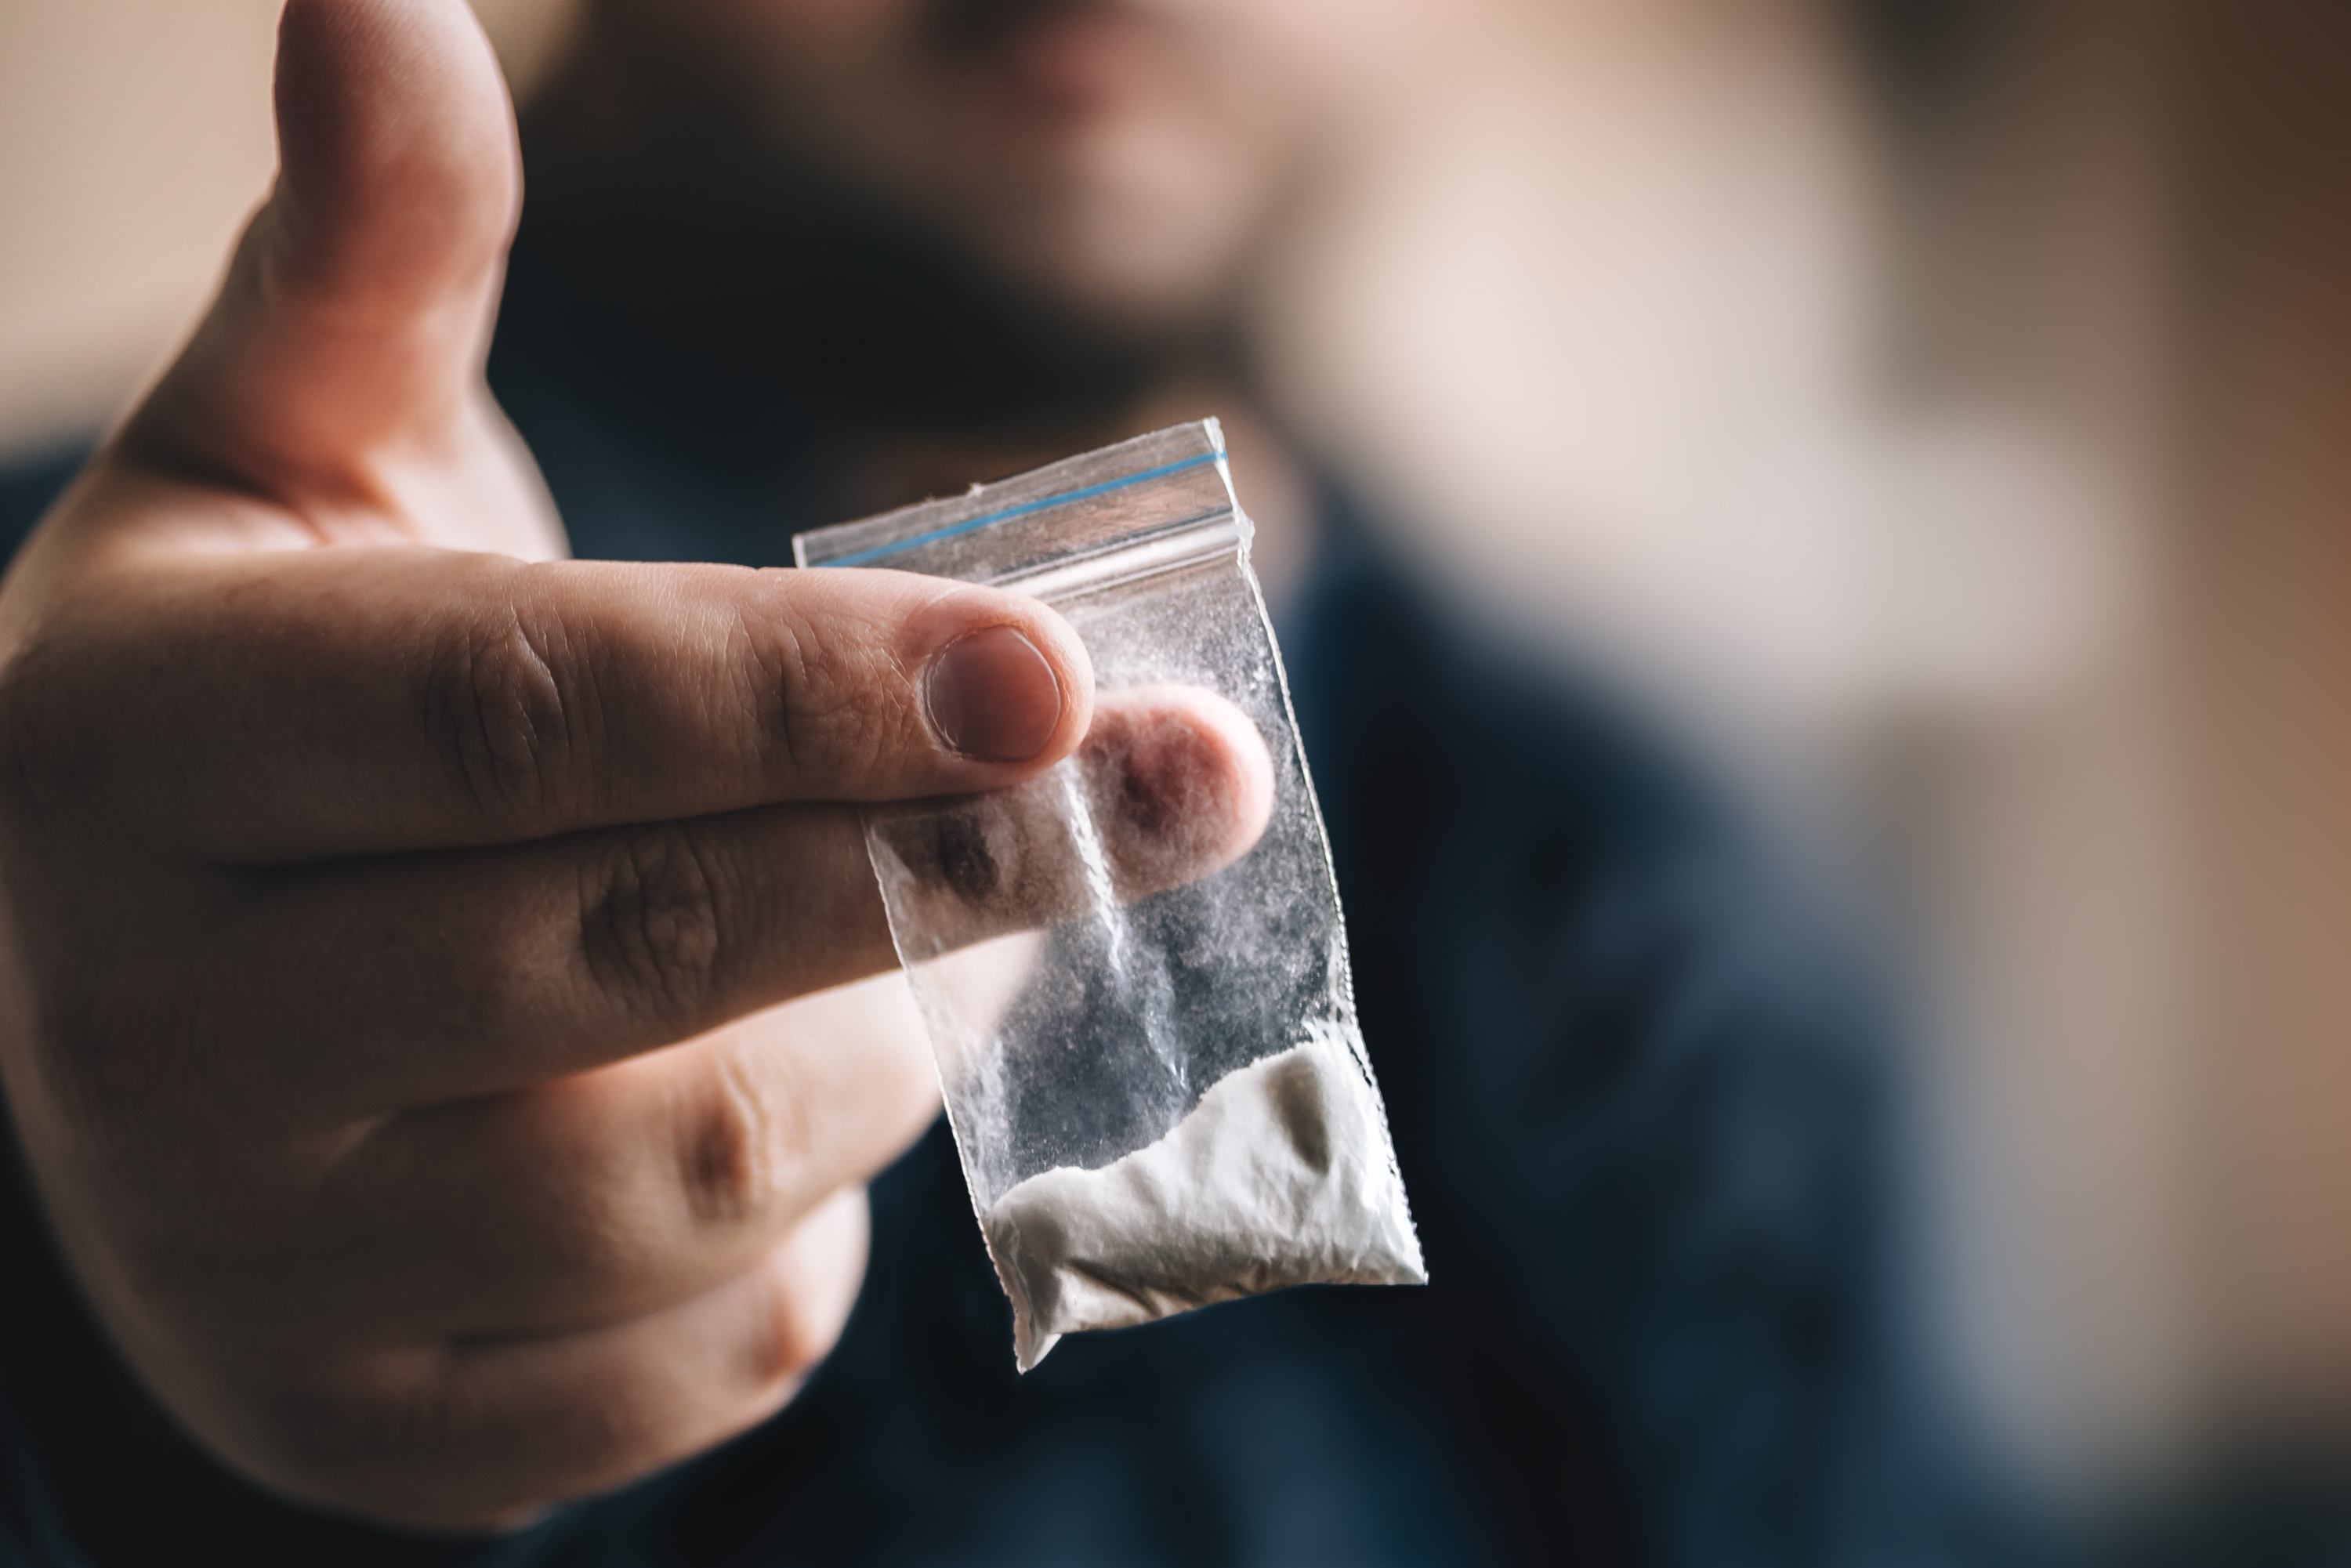 Trafic de drogue : un important laboratoire de cocaïne démantelé en Espagne